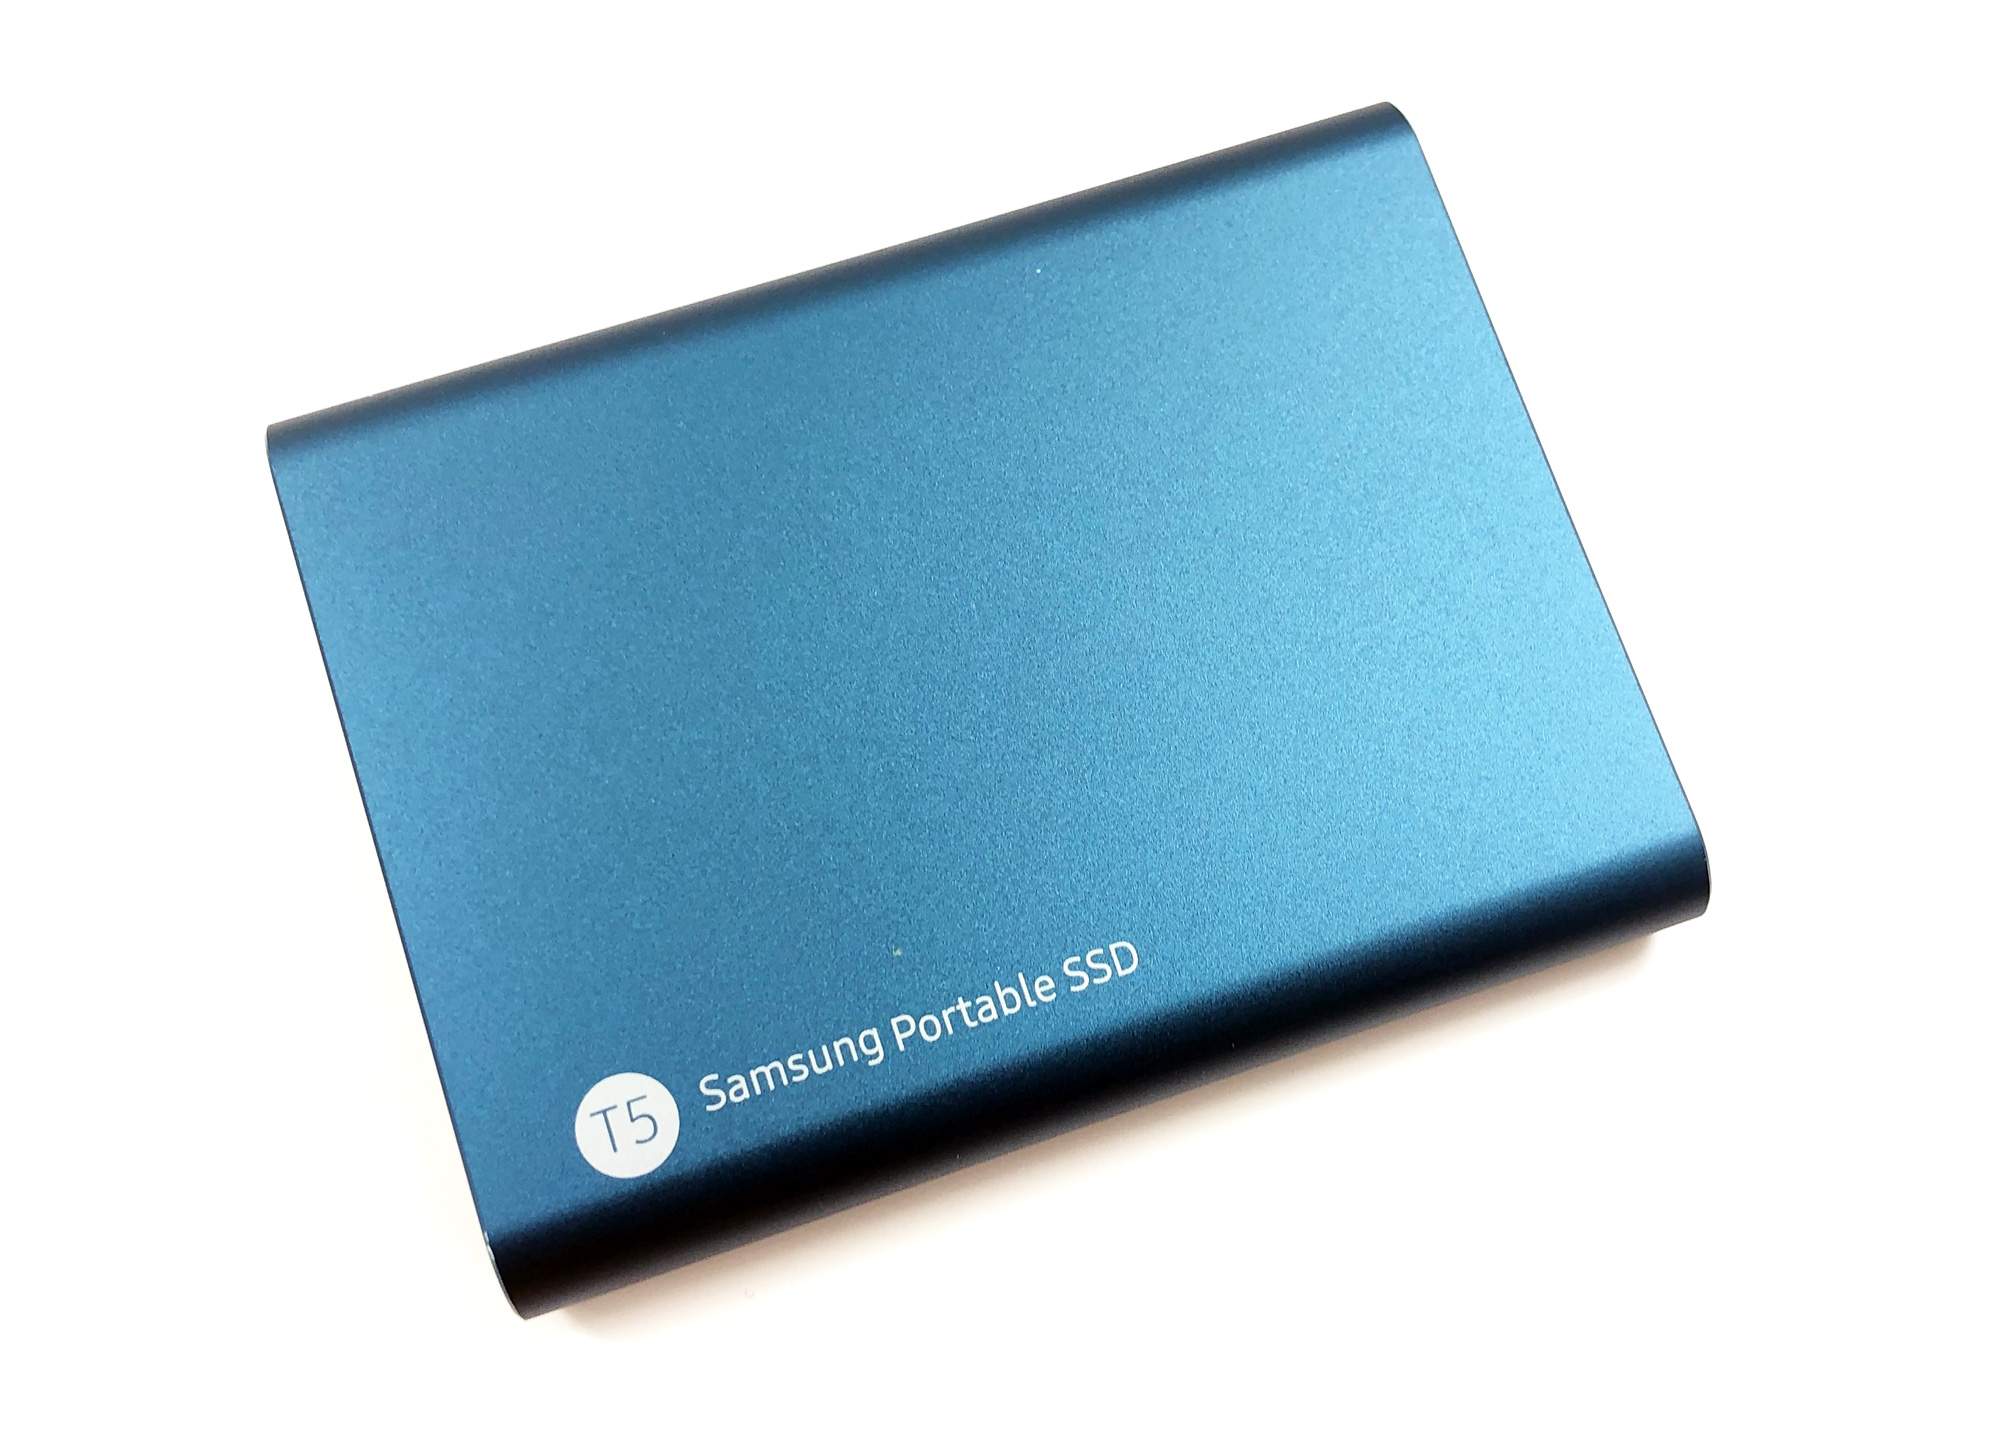 Samsung SSD T5 - Die Westentaschen SSD im Test